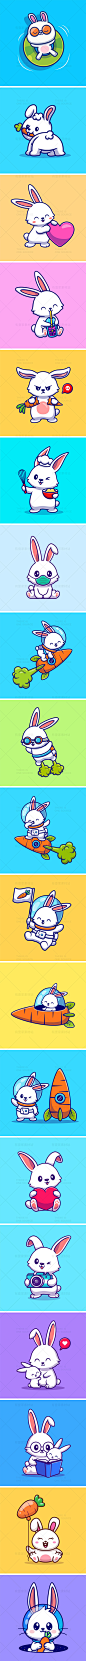 卡通可爱吉祥物动物宇航小白兔子胡萝卜ip形象插画AI矢量设计素材-淘宝网